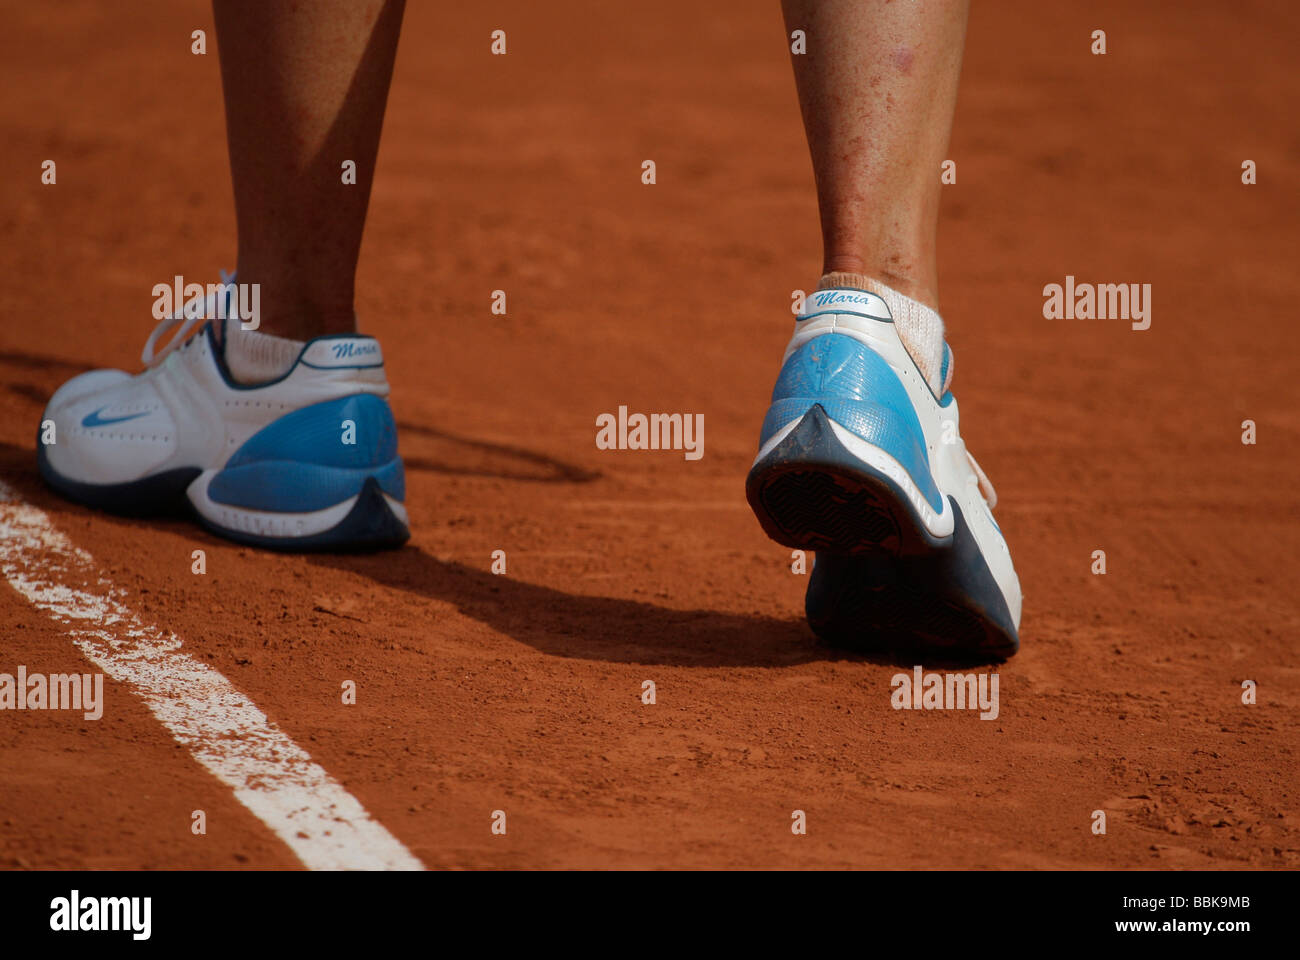 Tennis-Spieler Maria Sharapova Füße in ihre personalisierte Schuhe. Stockfoto